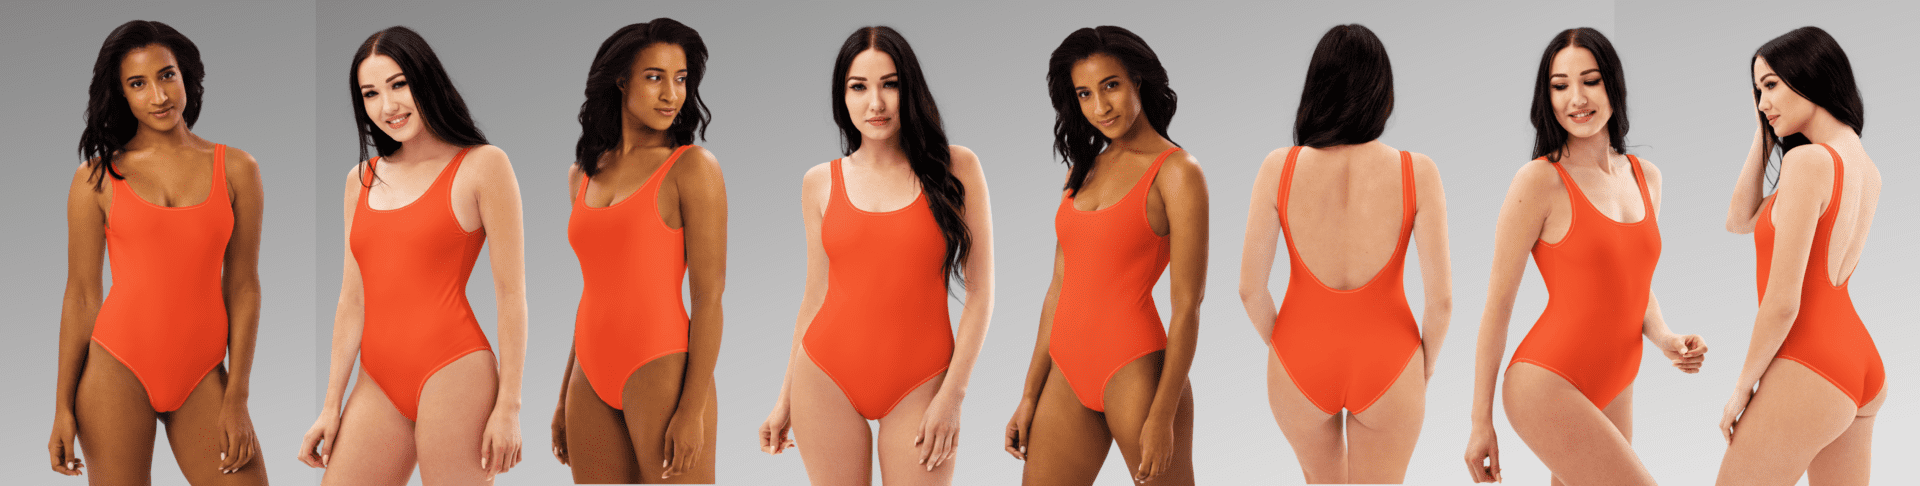 Seven women in orange swimsuits.